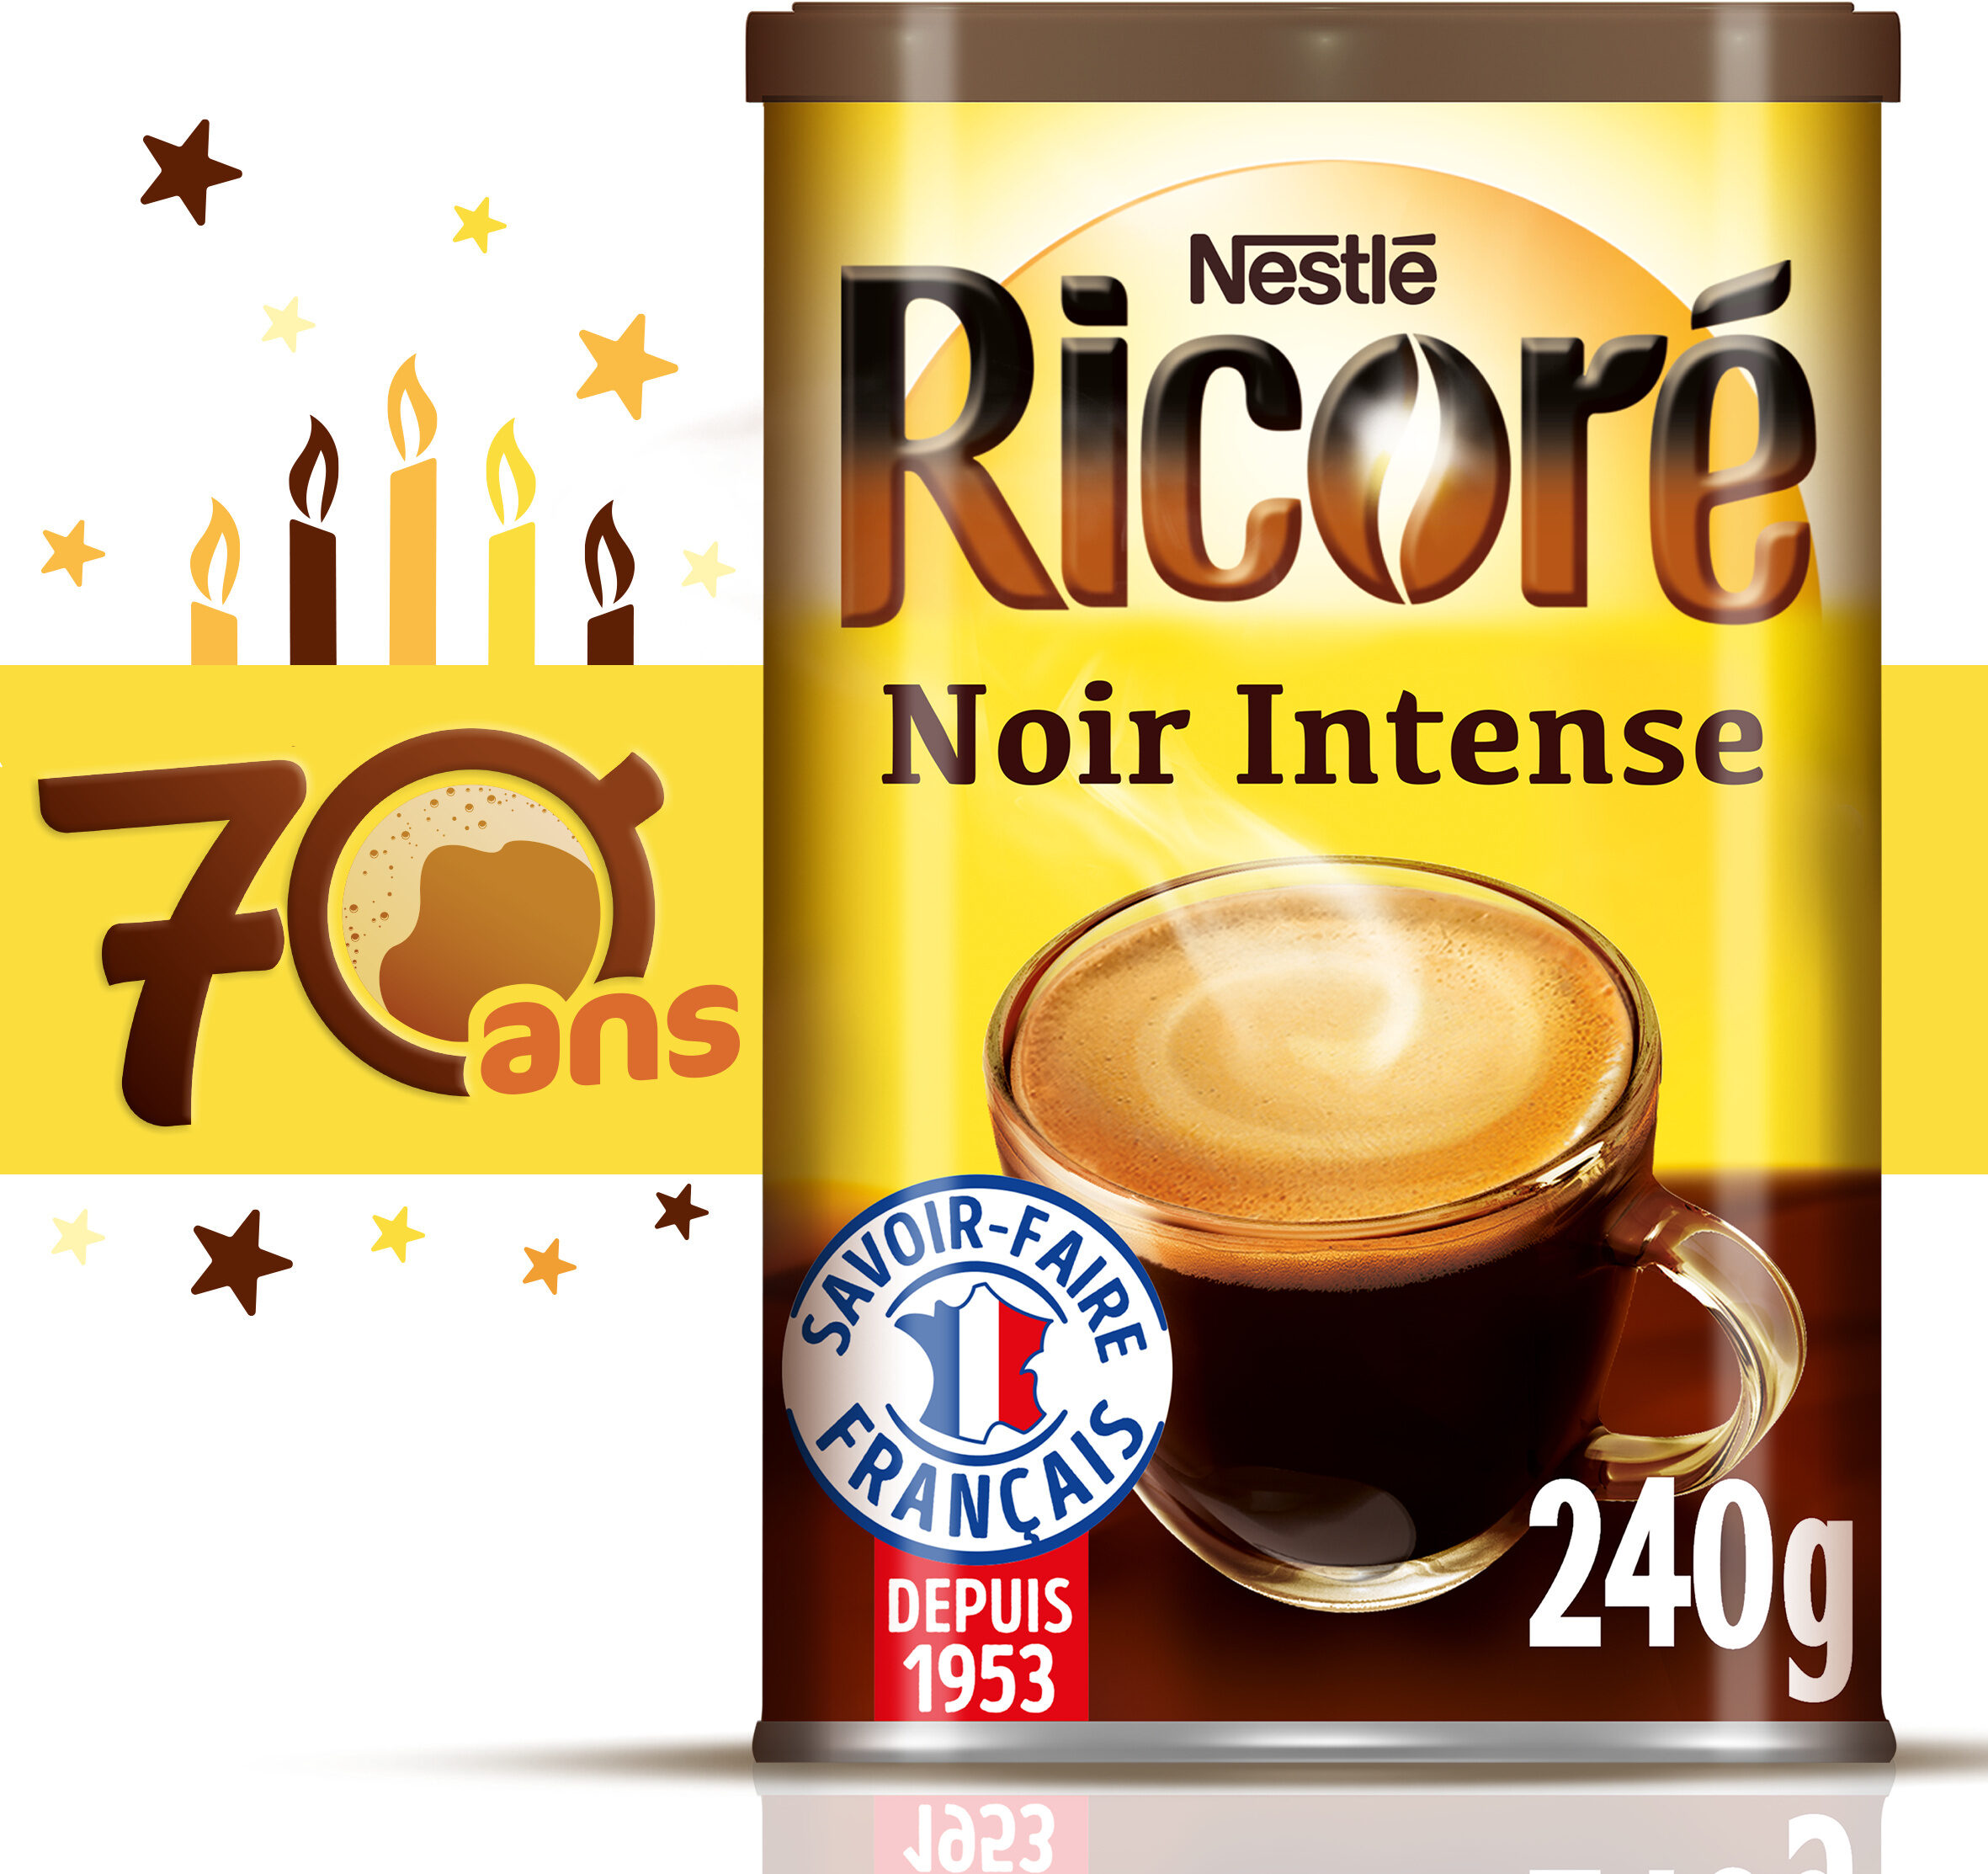 RICORE Noir Intense, Café & Chicorée, Boîte 240g - Produkt - fr